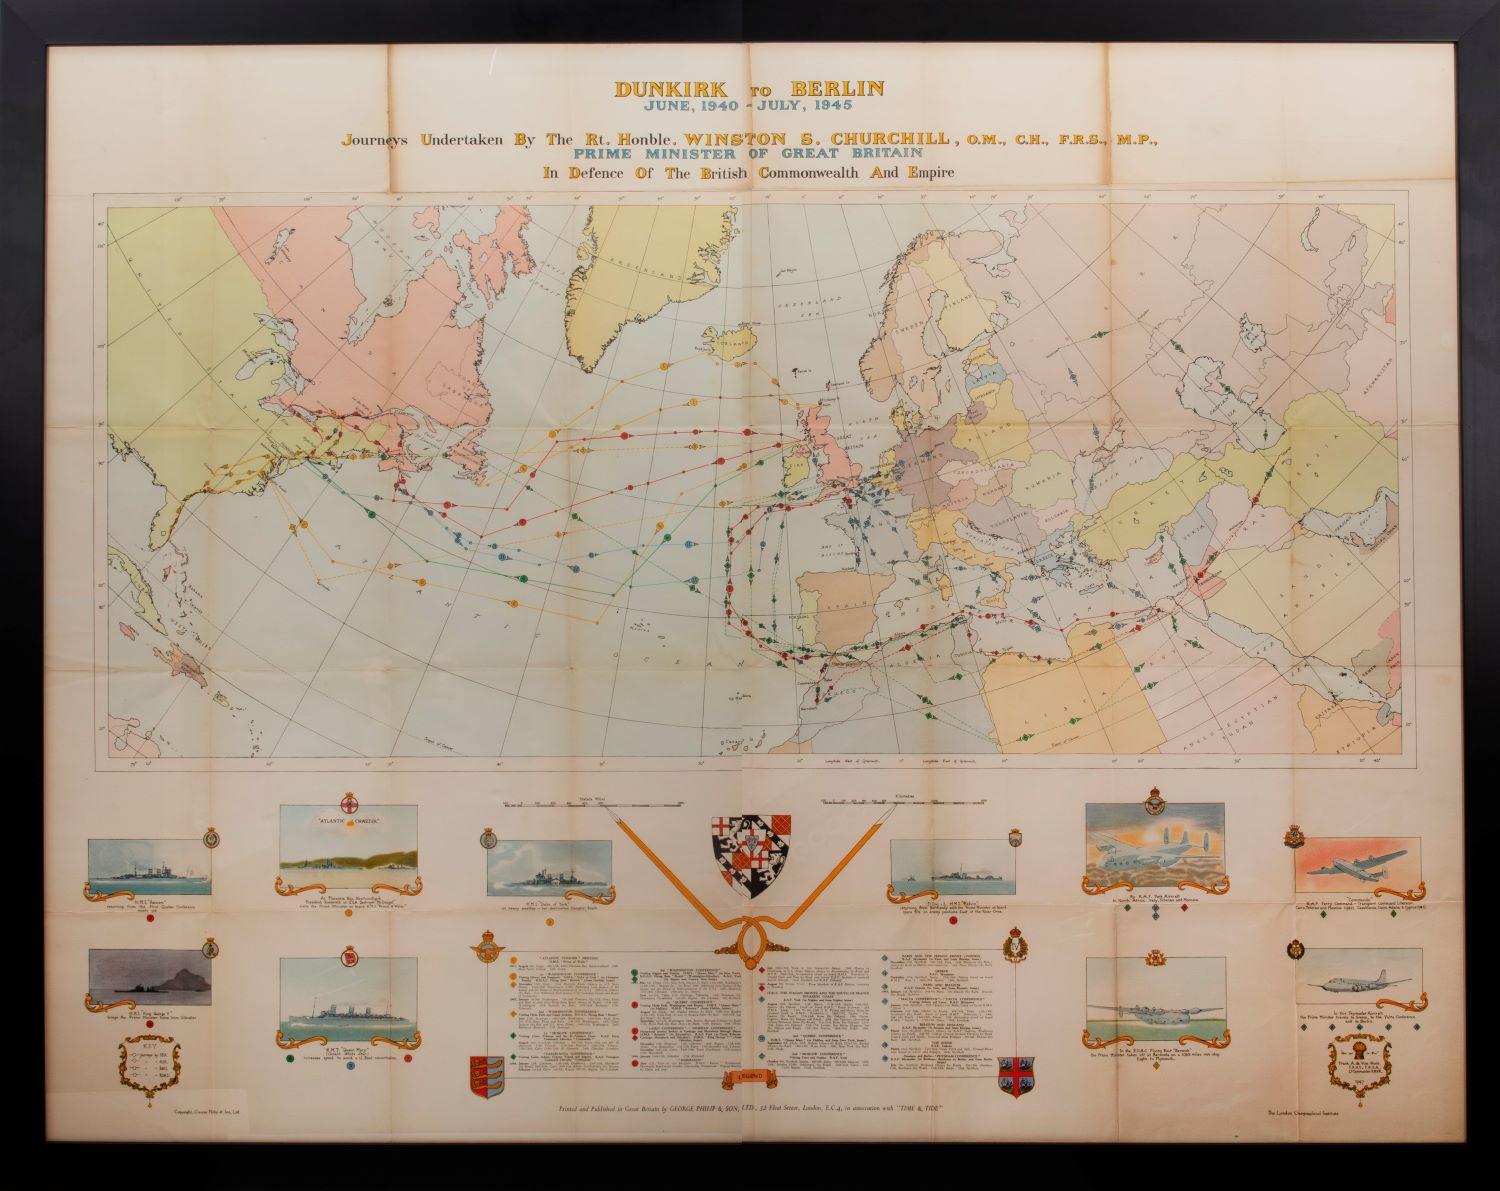 Carte de la Seconde Guerre mondiale] - Dunkirk à Berlin en juin 1940. - Art de Unknown